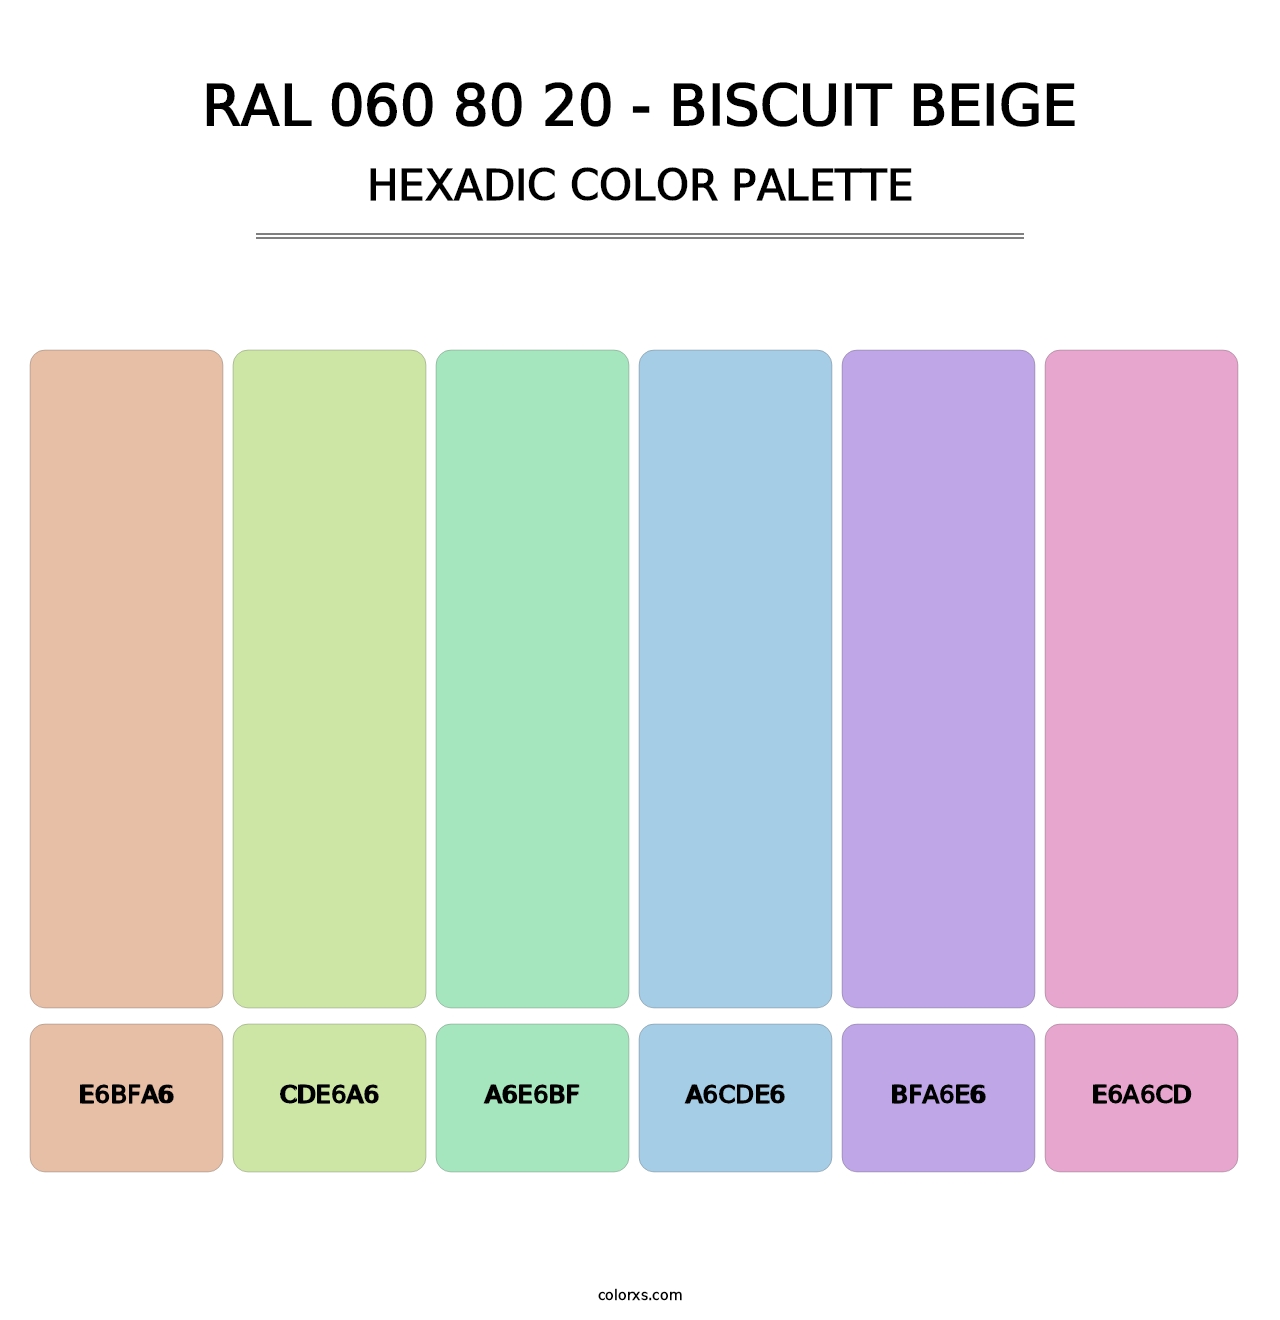 RAL 060 80 20 - Biscuit Beige - Hexadic Color Palette